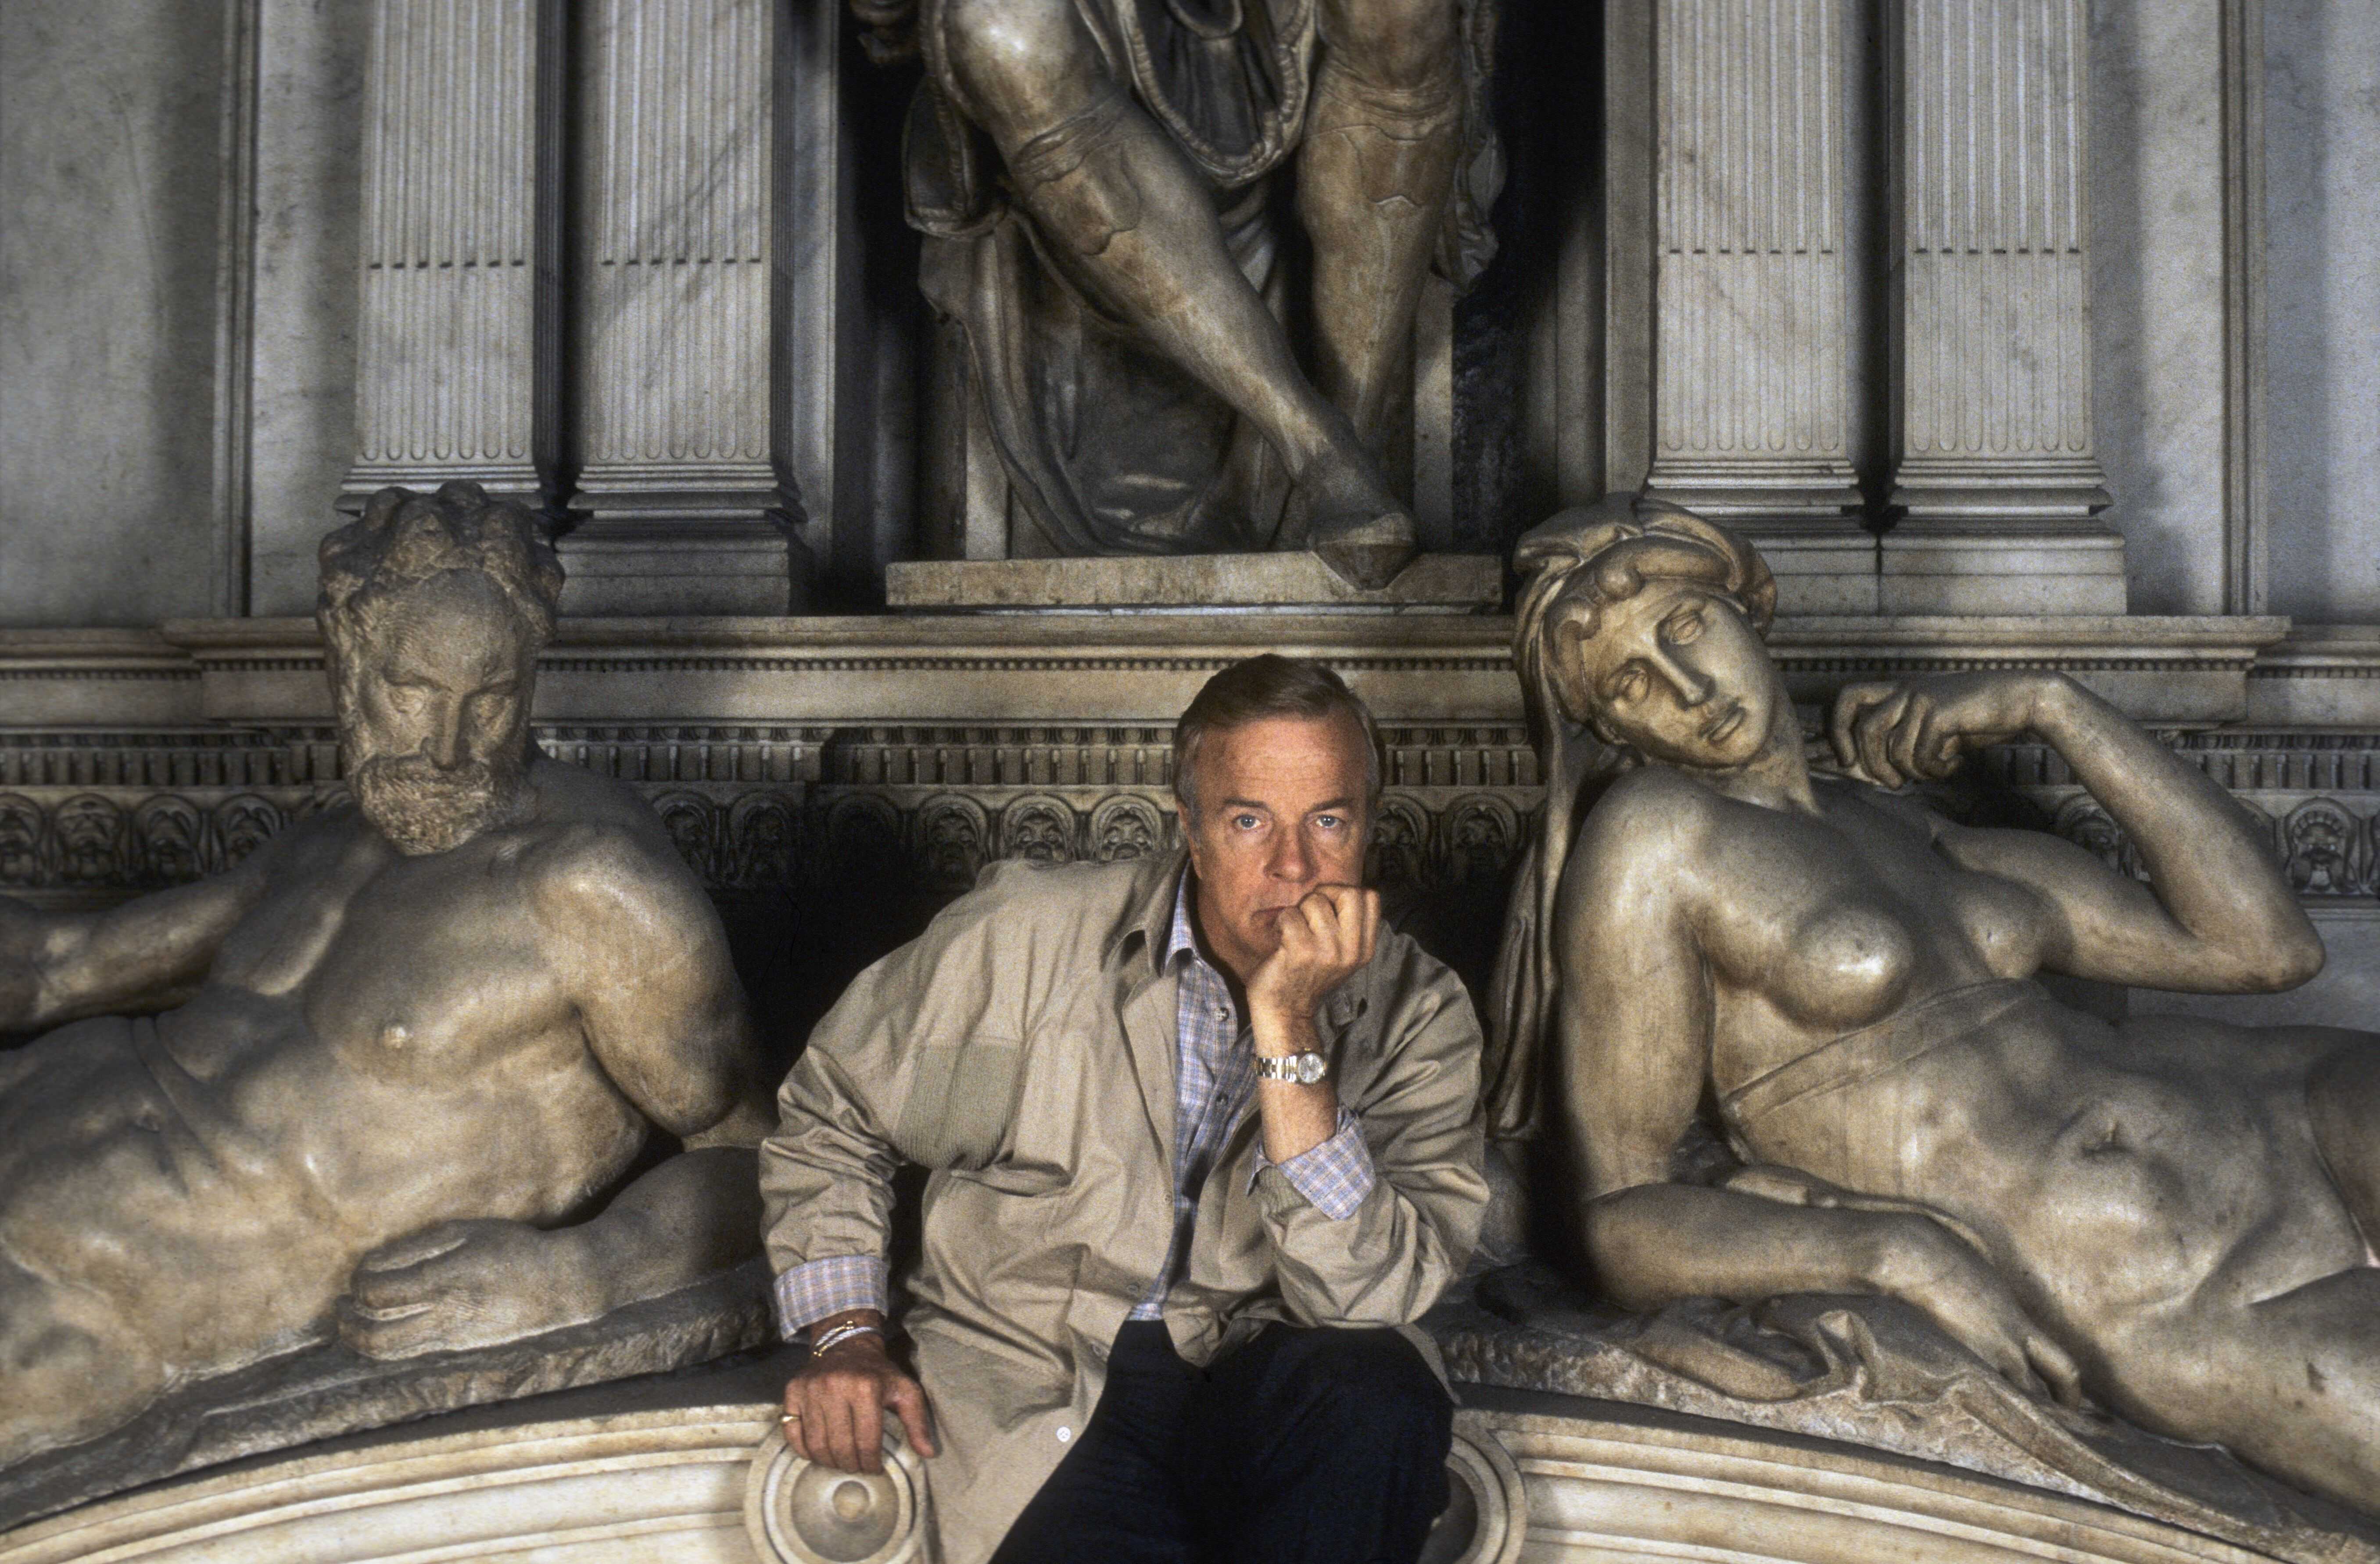 Morto Franco Zeffirelli. “Ecco le sue frasi celebri” Camera ardente lunedì a Firenze